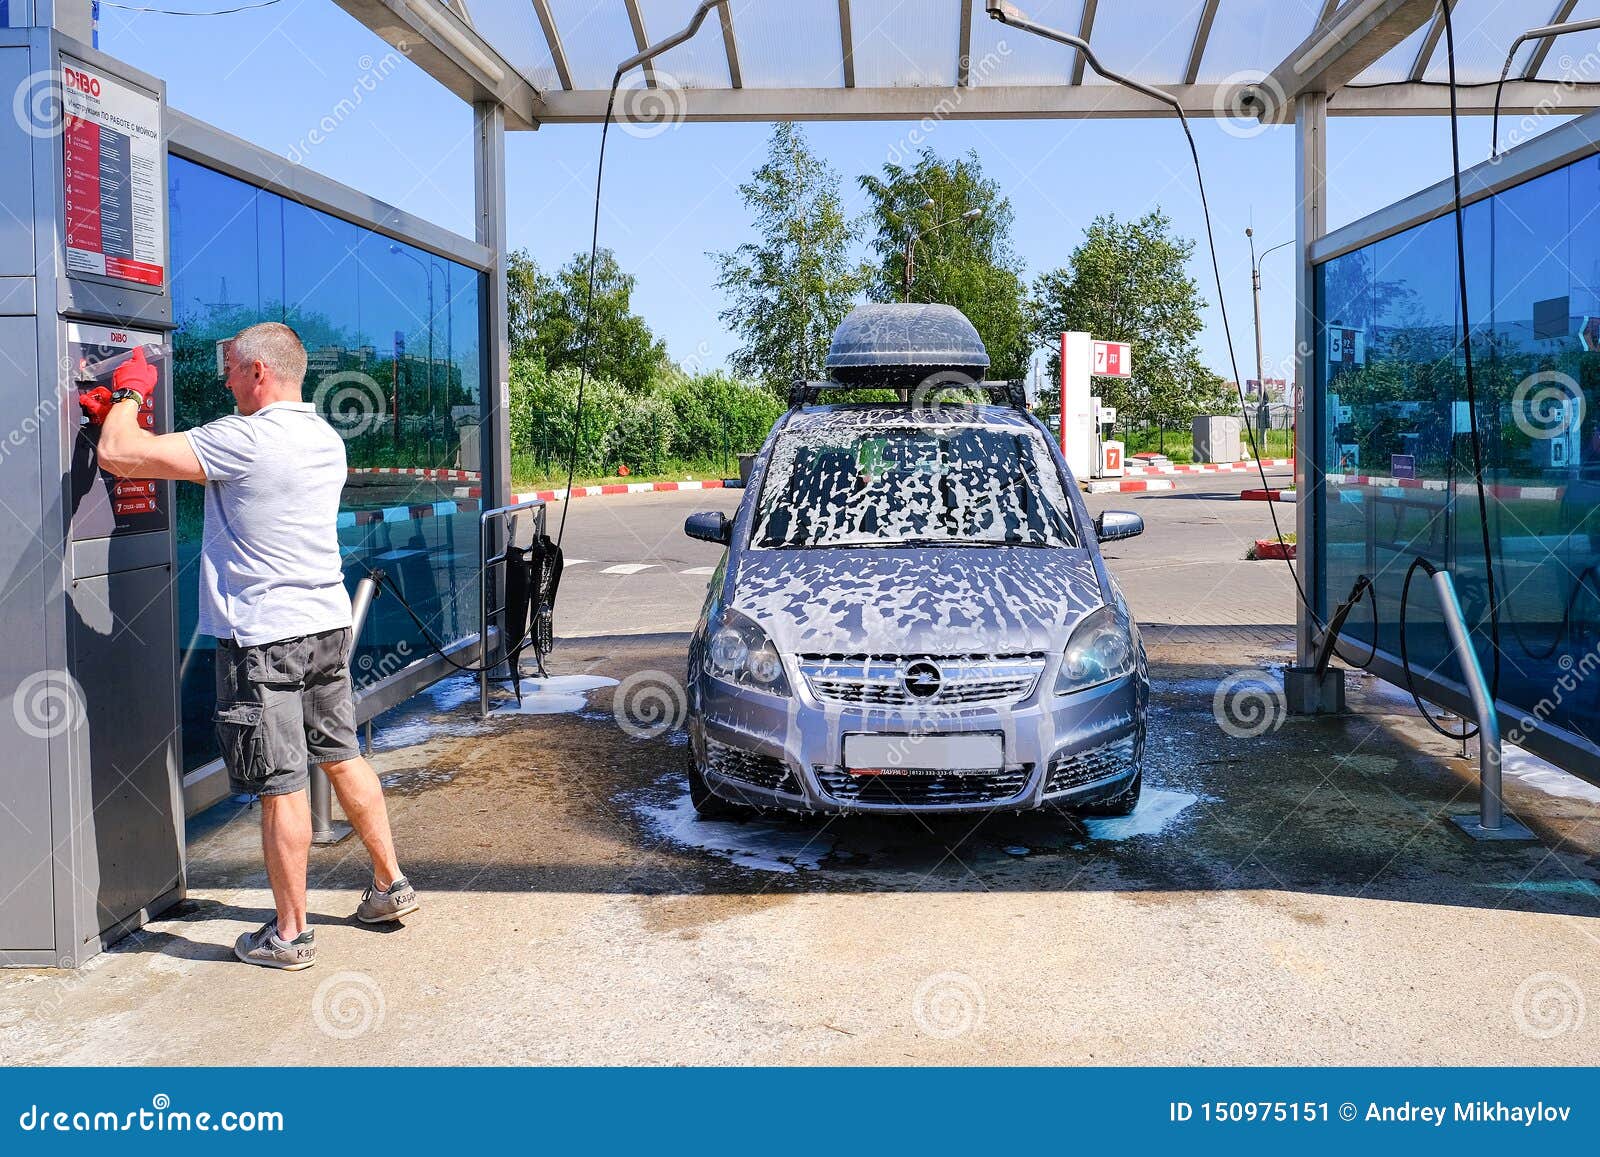 Как мыть машину на мойке самообслуживания инструкция: Как правильно мыть машину на мойке самообслуживания? - отвечаем на вопрос. - Статьи - Новости